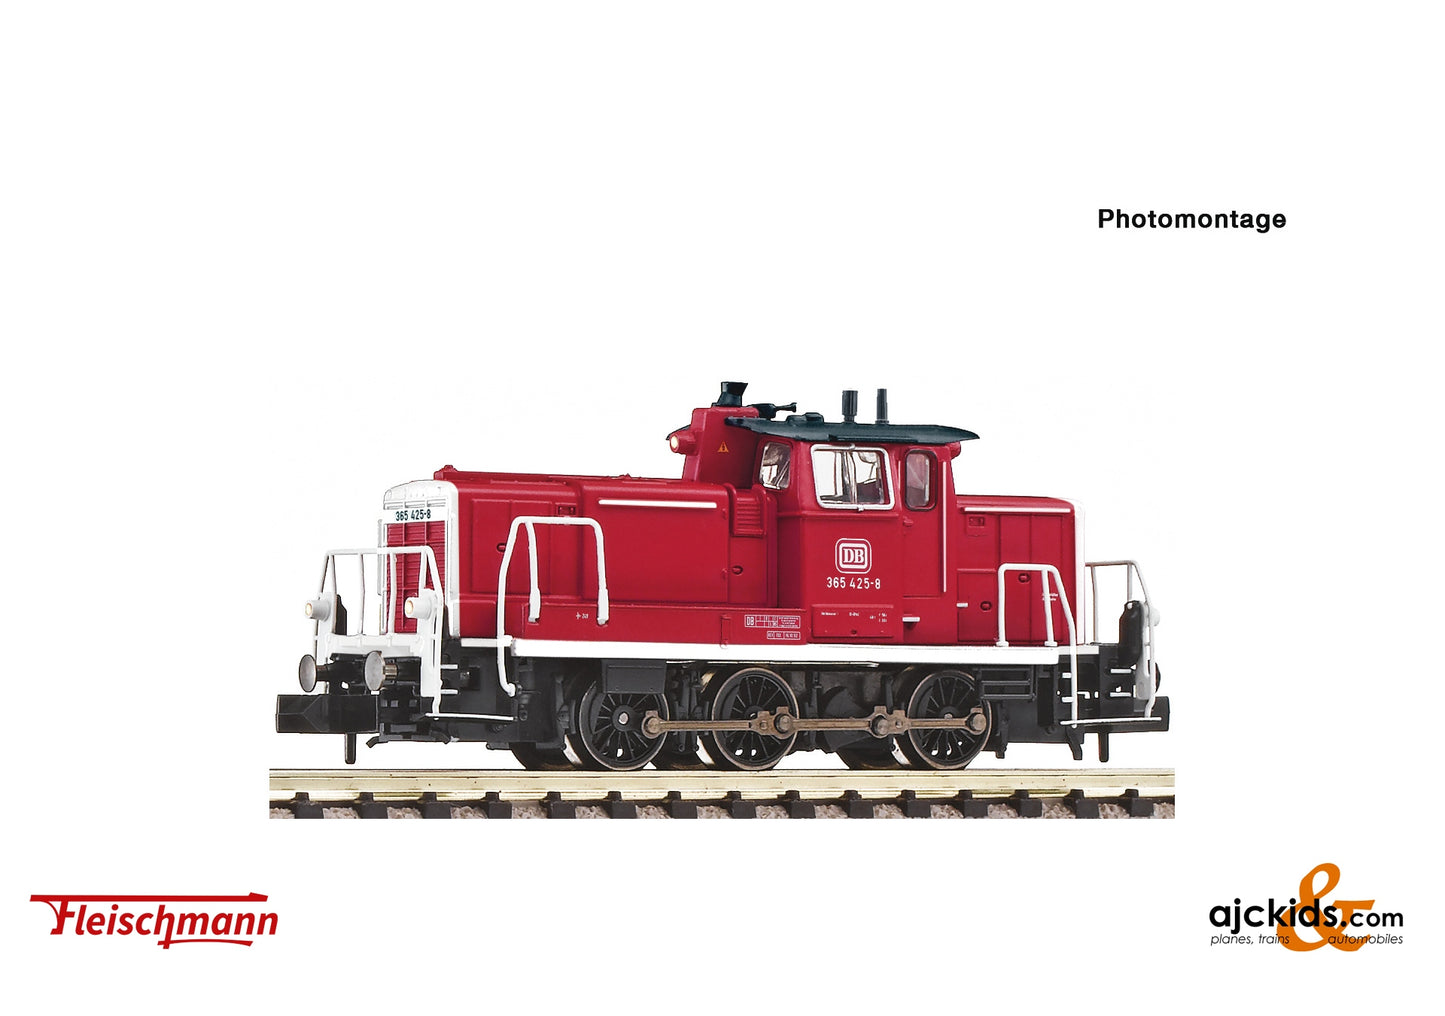 Fleischmann 7360003 - Diesel locomotive 365 425-8, DB at Ajckids.com